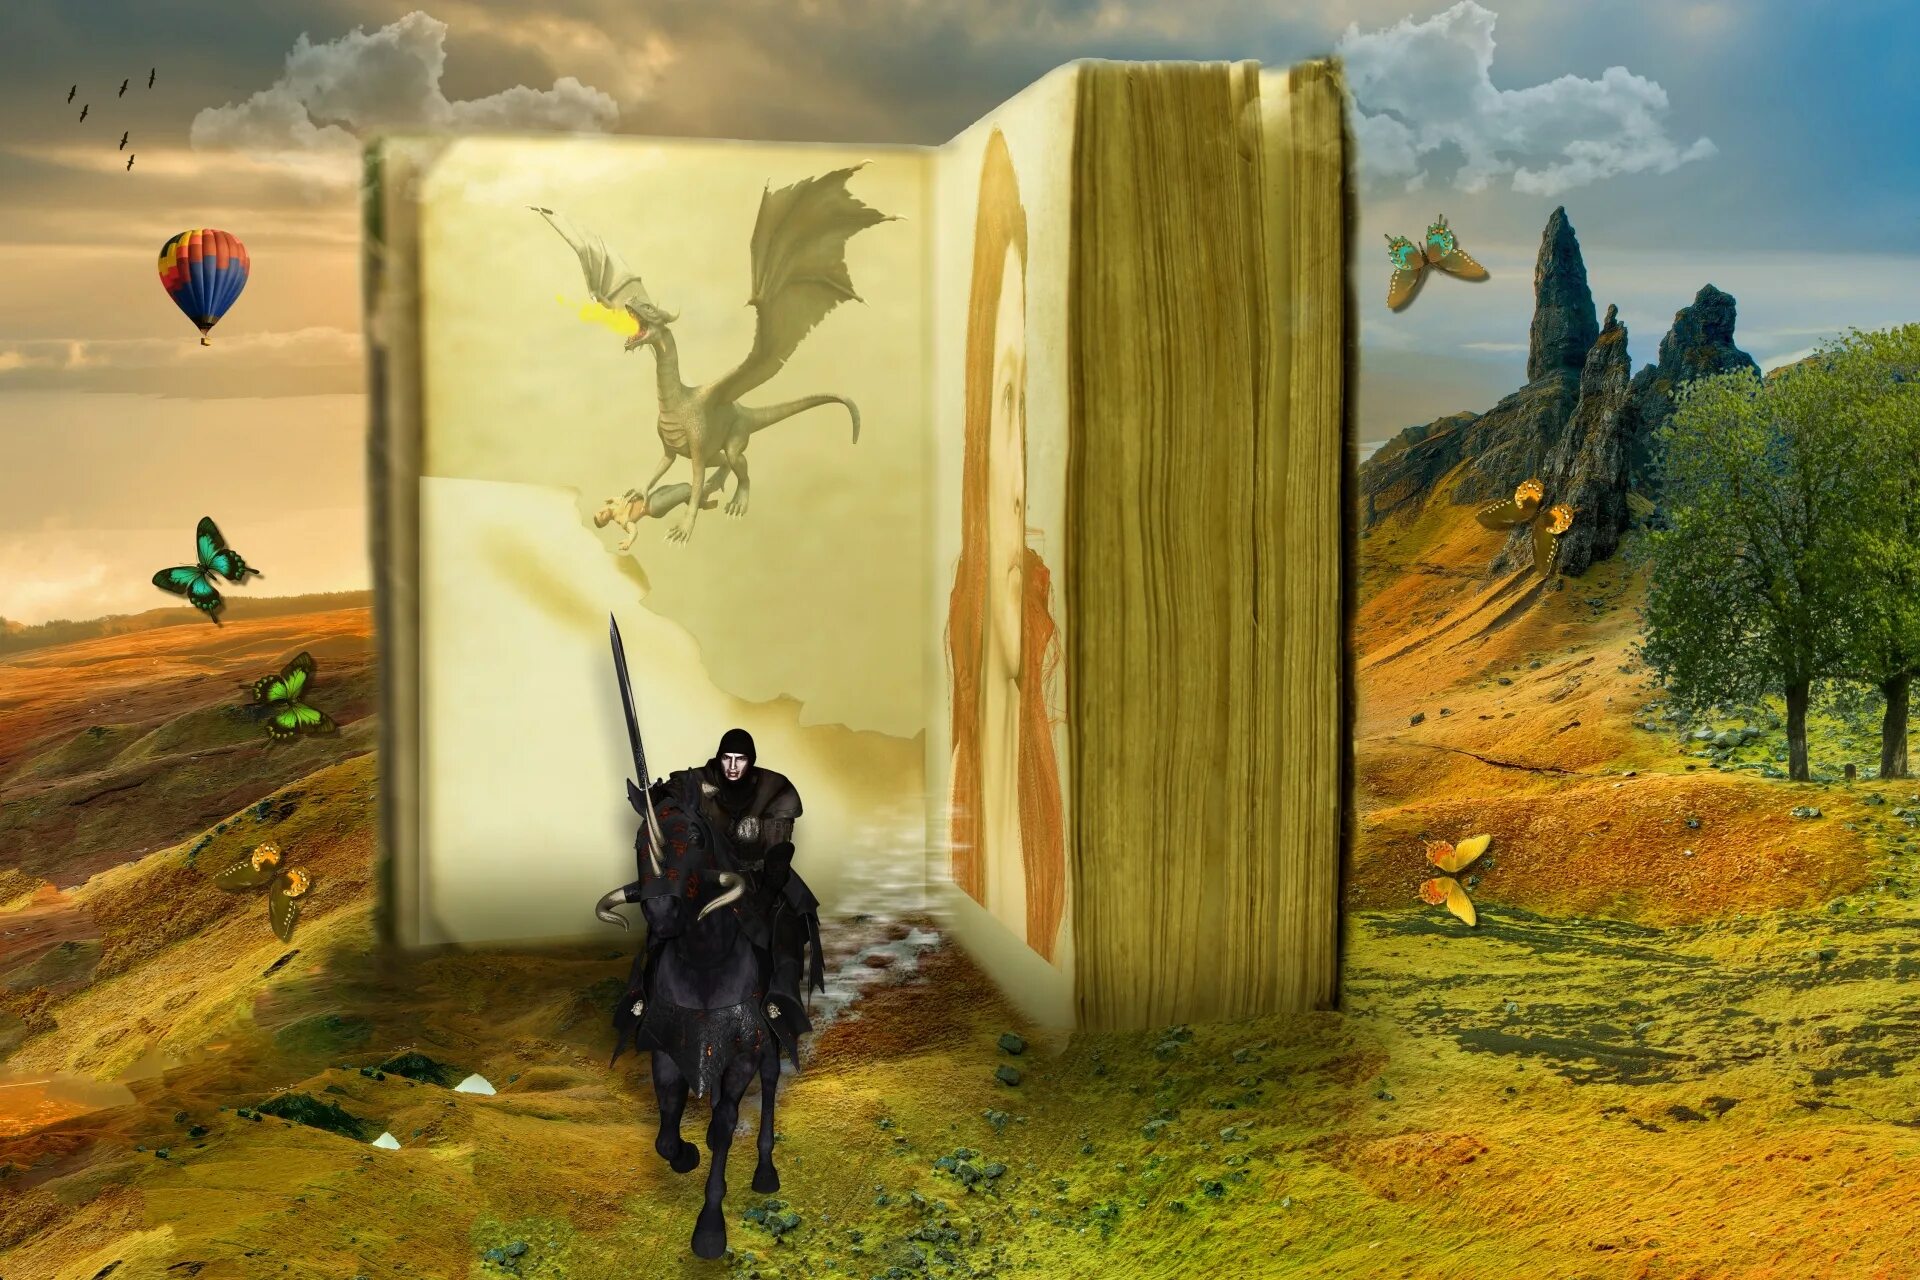 Fantasy worlds электронная библиотека. Красивые иллюстрации к книгам. Фантастический фон книг. Фантастическое изображение книг.